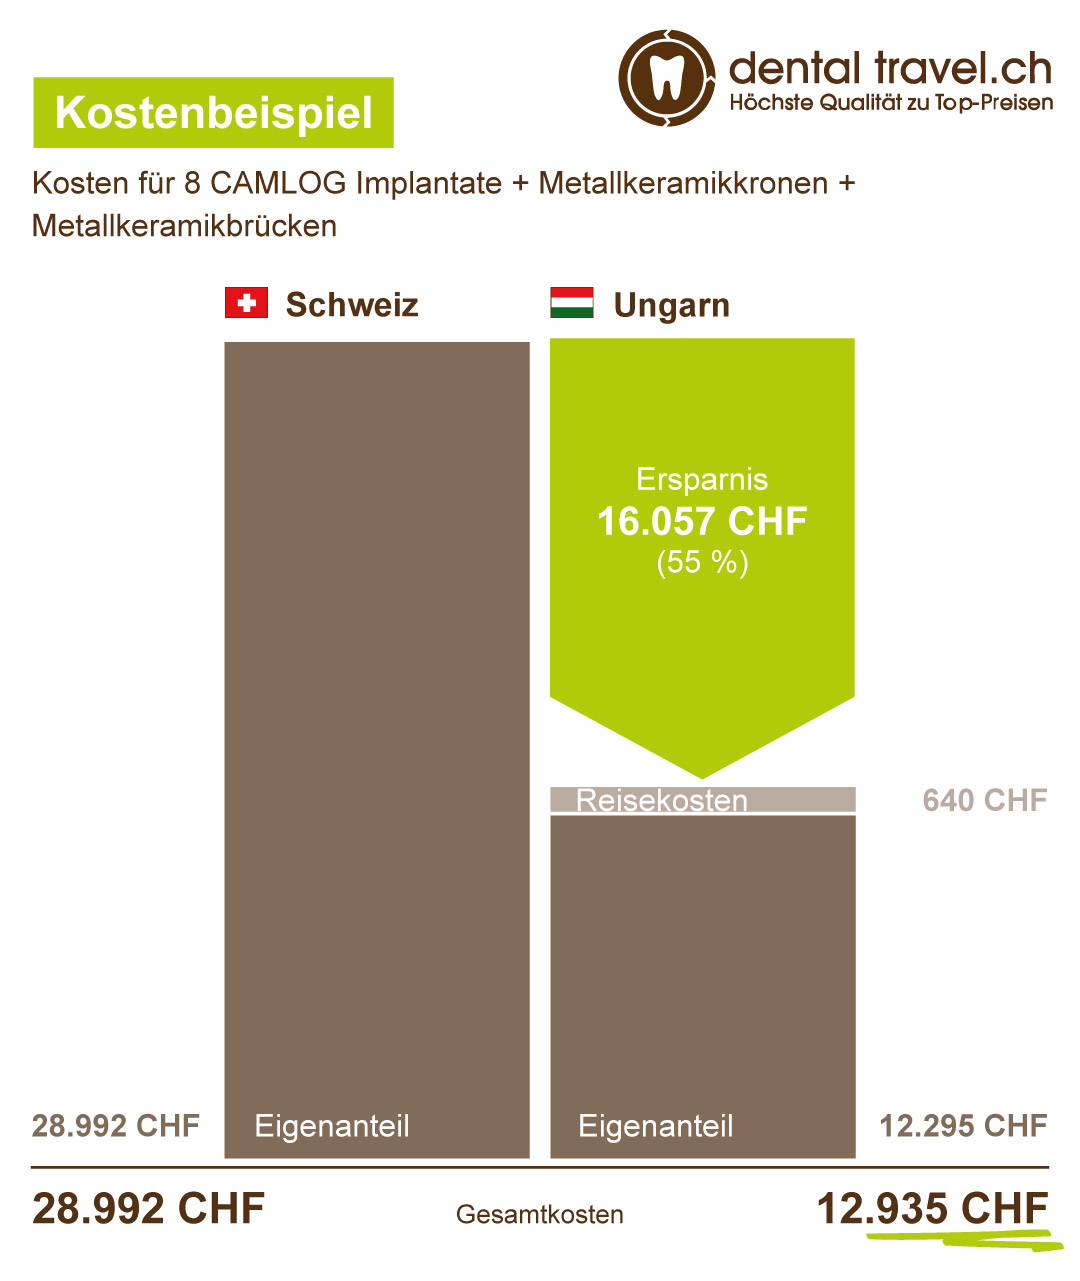 Preisvergleich für acht CAMLOG Implantate, Metallkeramikkronen und -brücken, Schaubild der Kosten in Ungarn und der Schweiz